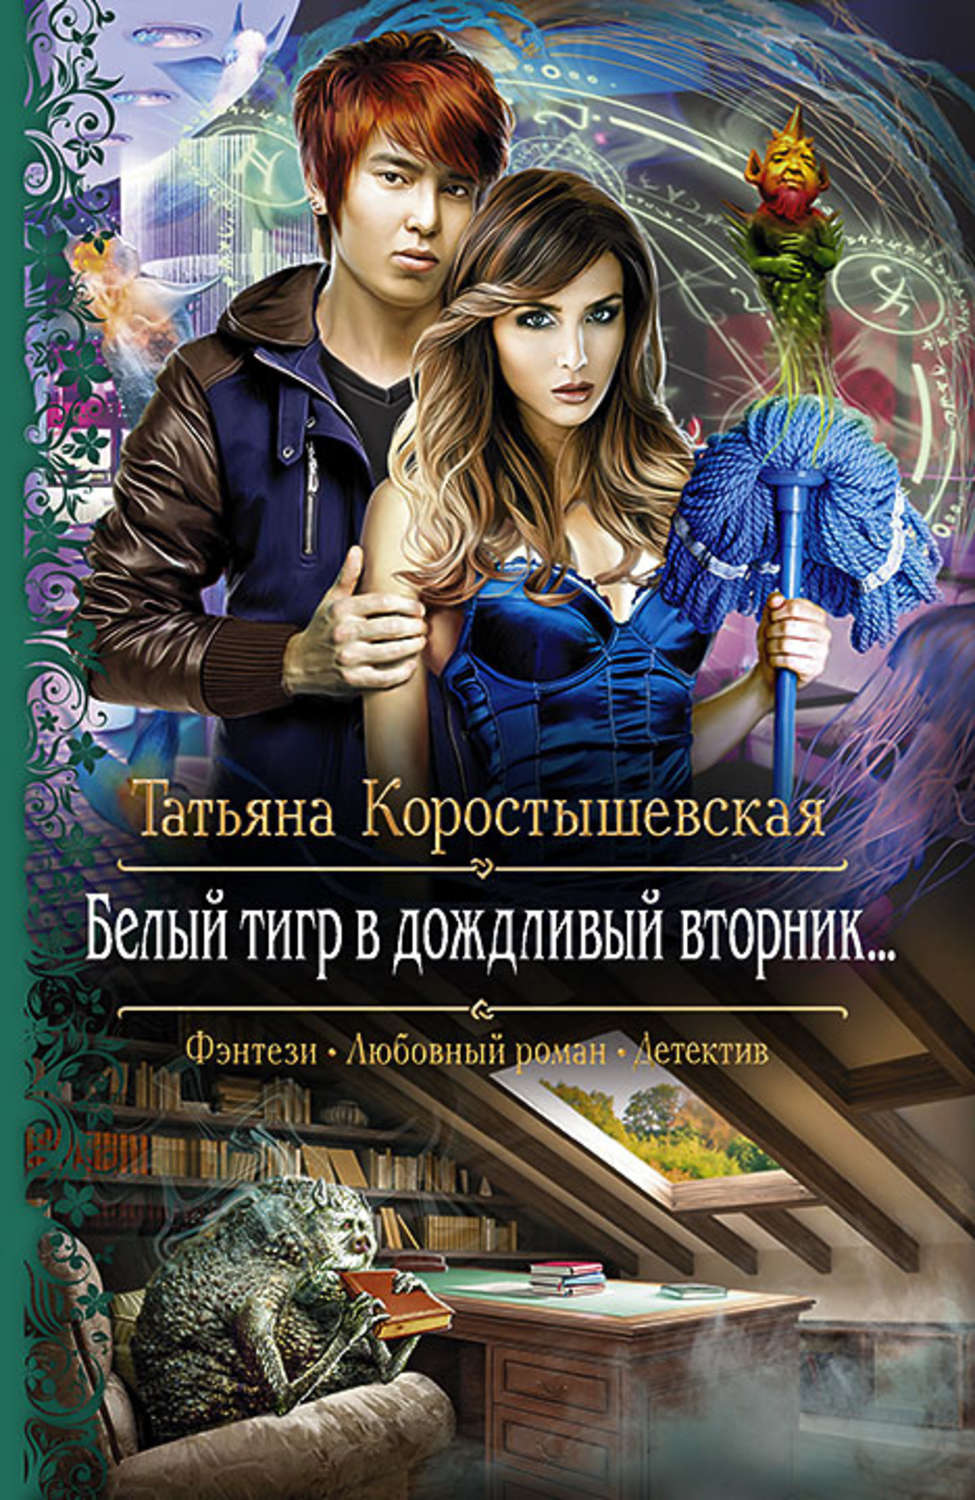 Татьяна коростышевская все книги скачать бесплатно fb2